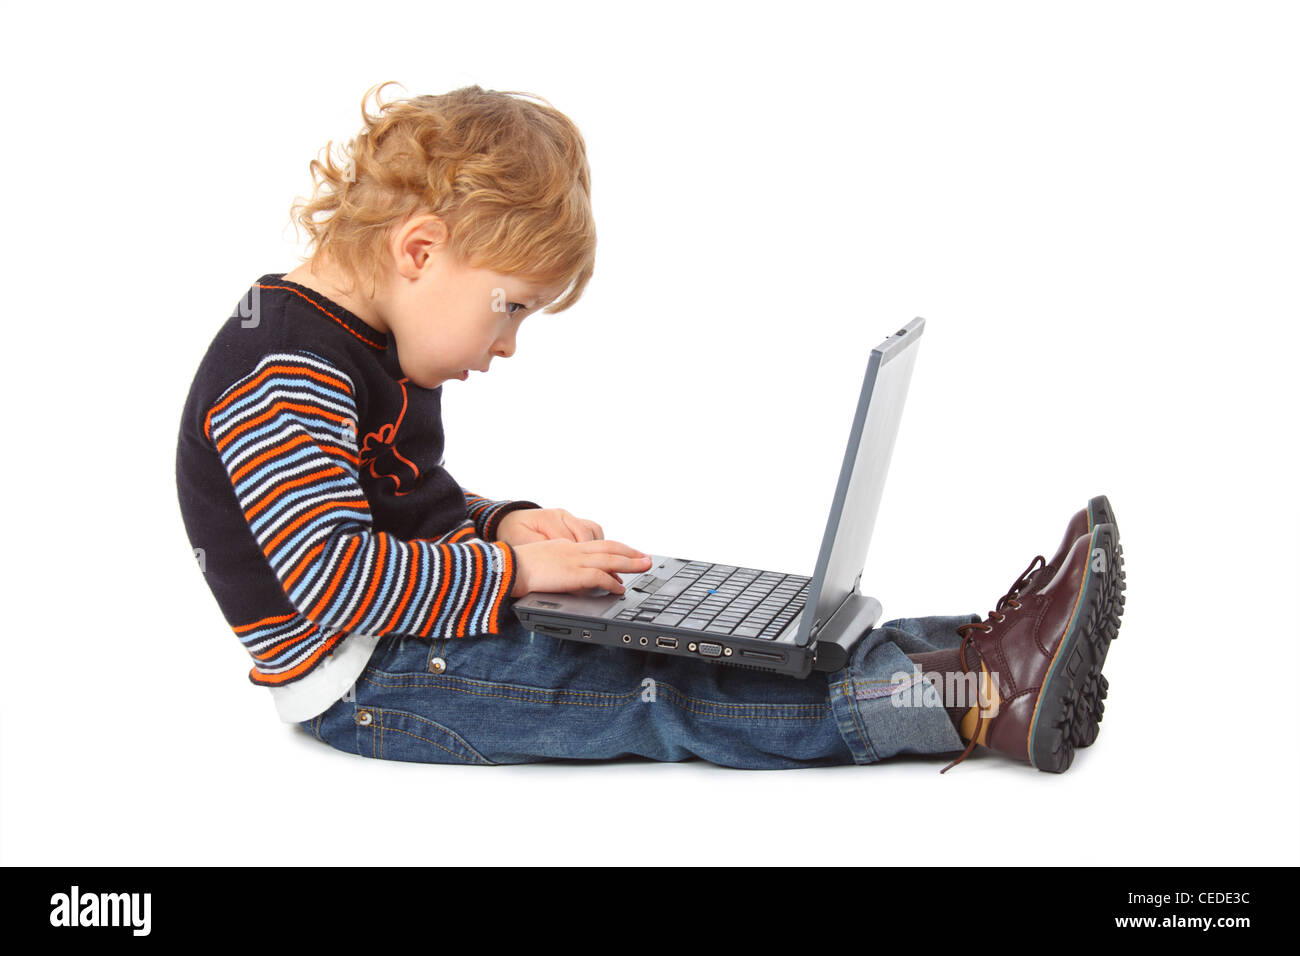 Junge mit Laptop im Profil Stockfoto